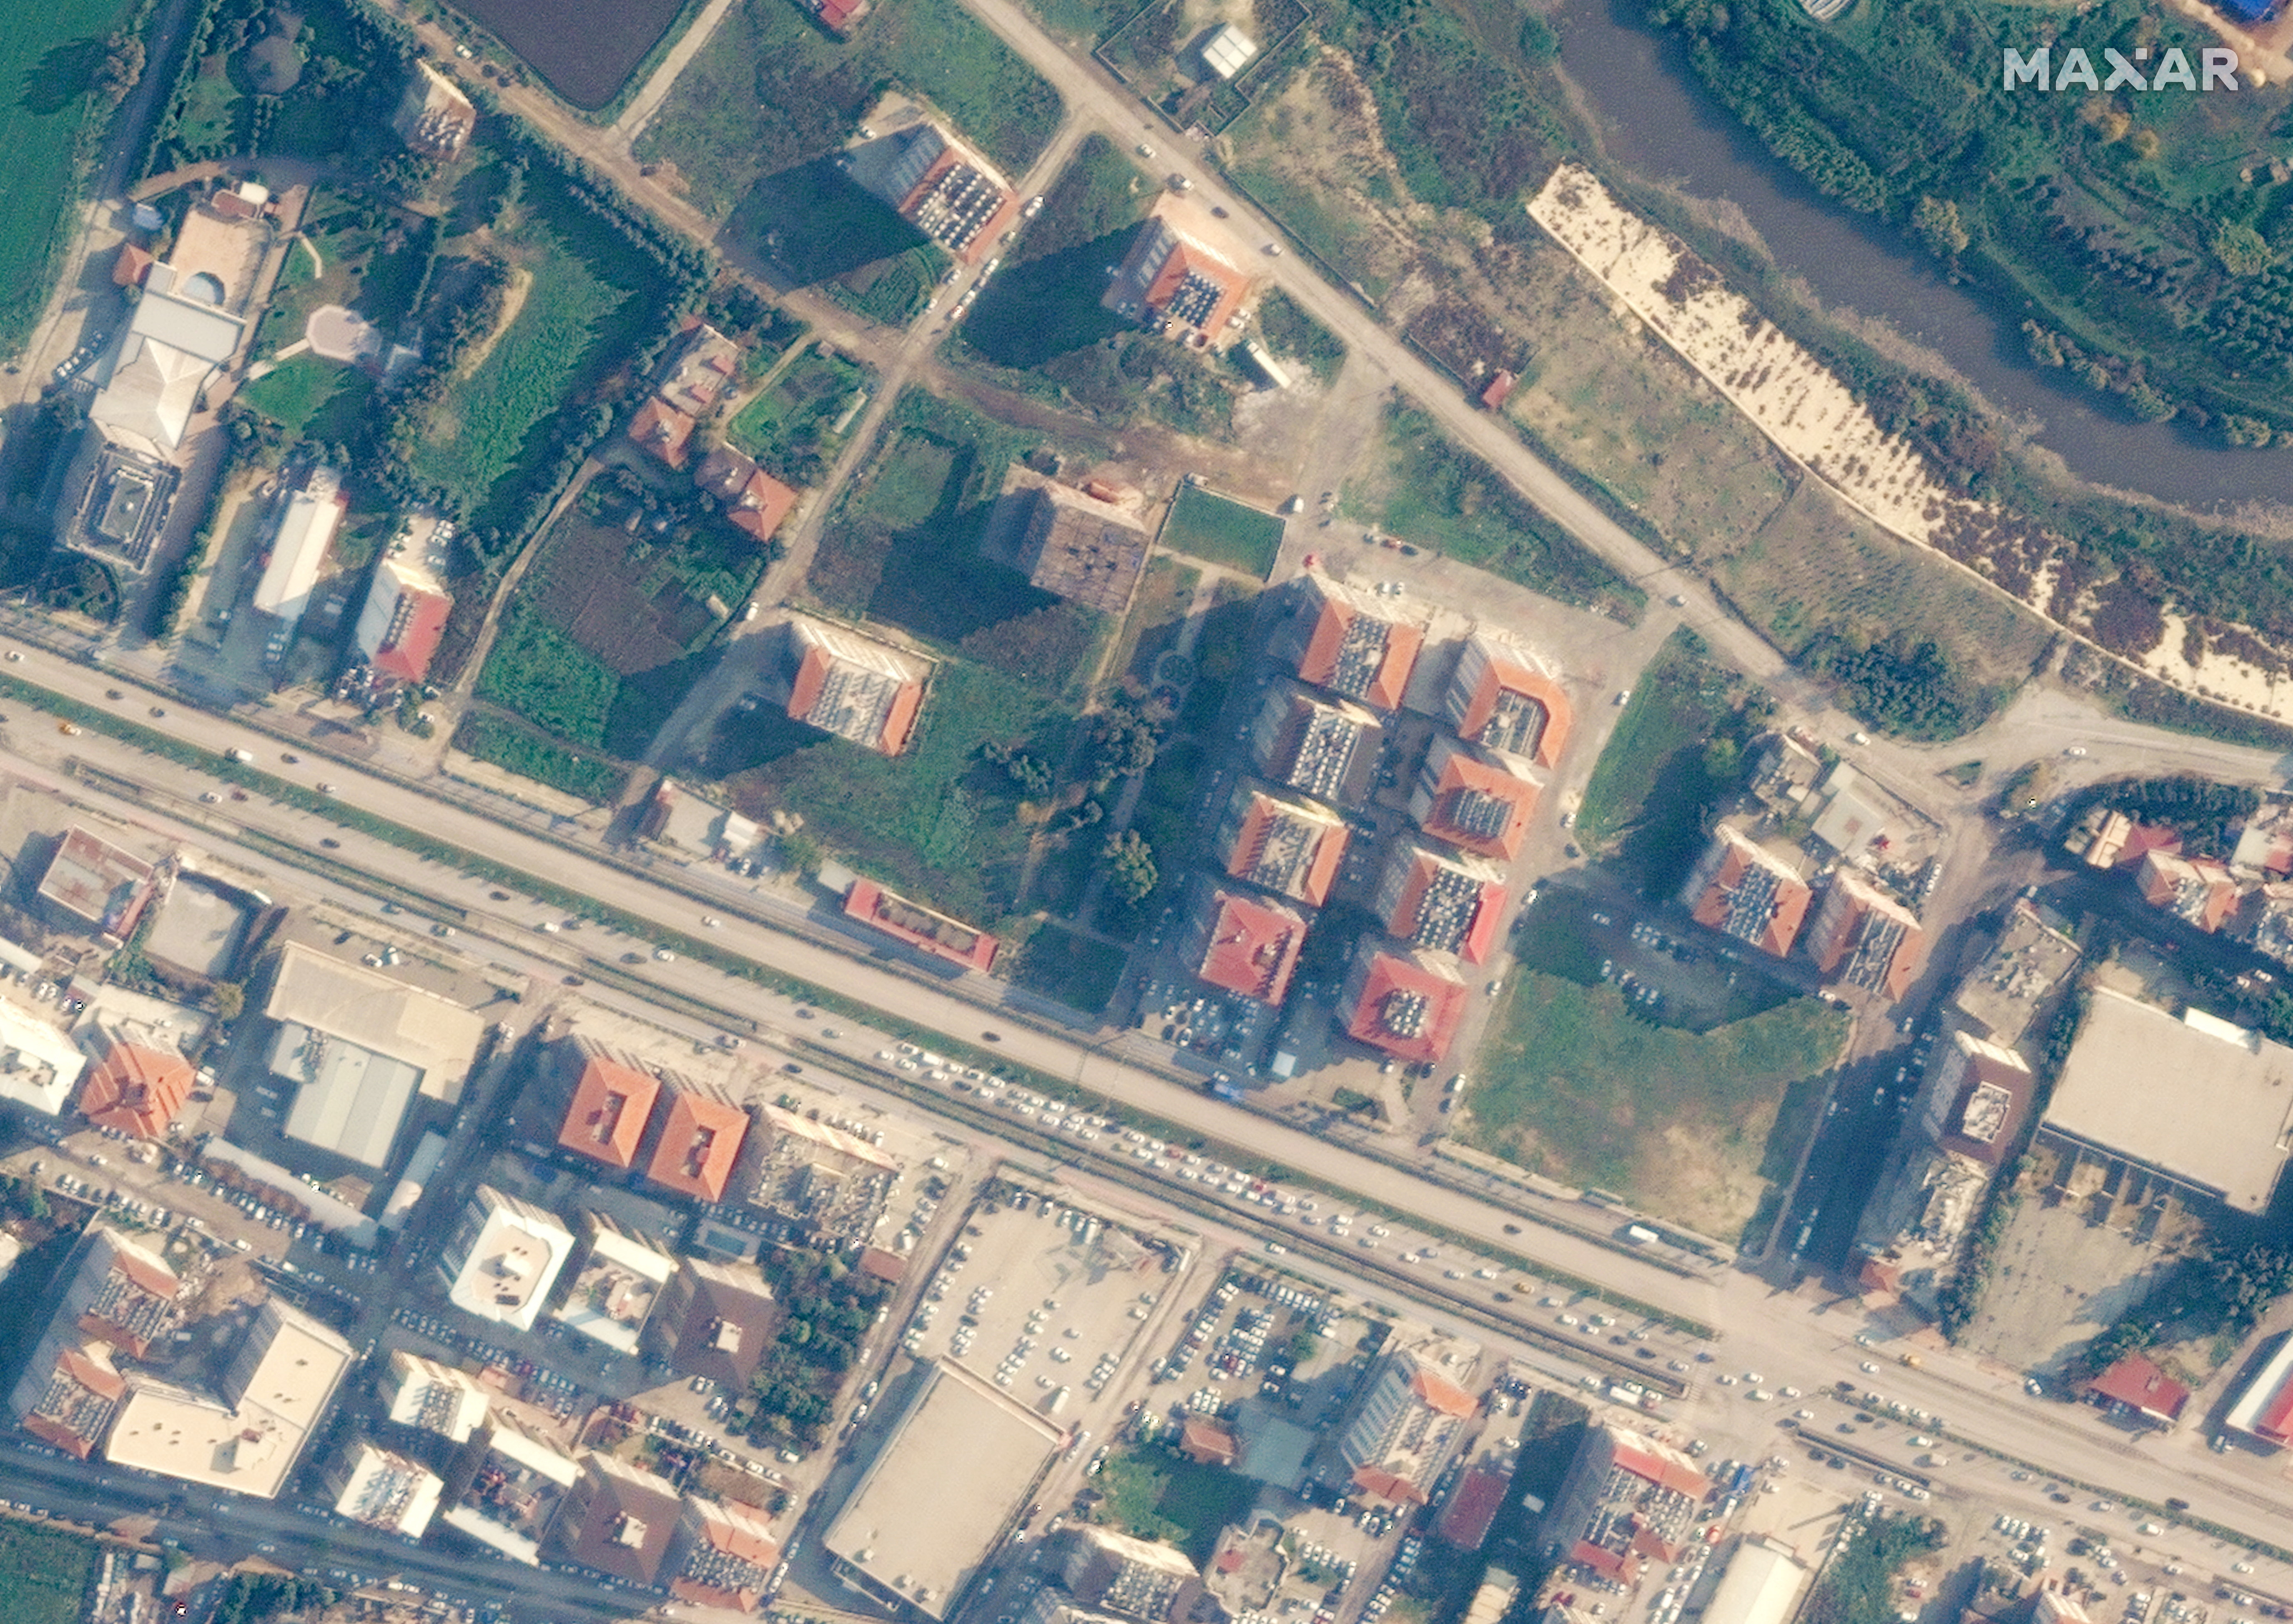 Esta imagen satelital captó cómo se veían los edificios antes de un terremoto en Antakya. Imagen satelital ©2023 Maxar Technologies/Handout via REUTERS